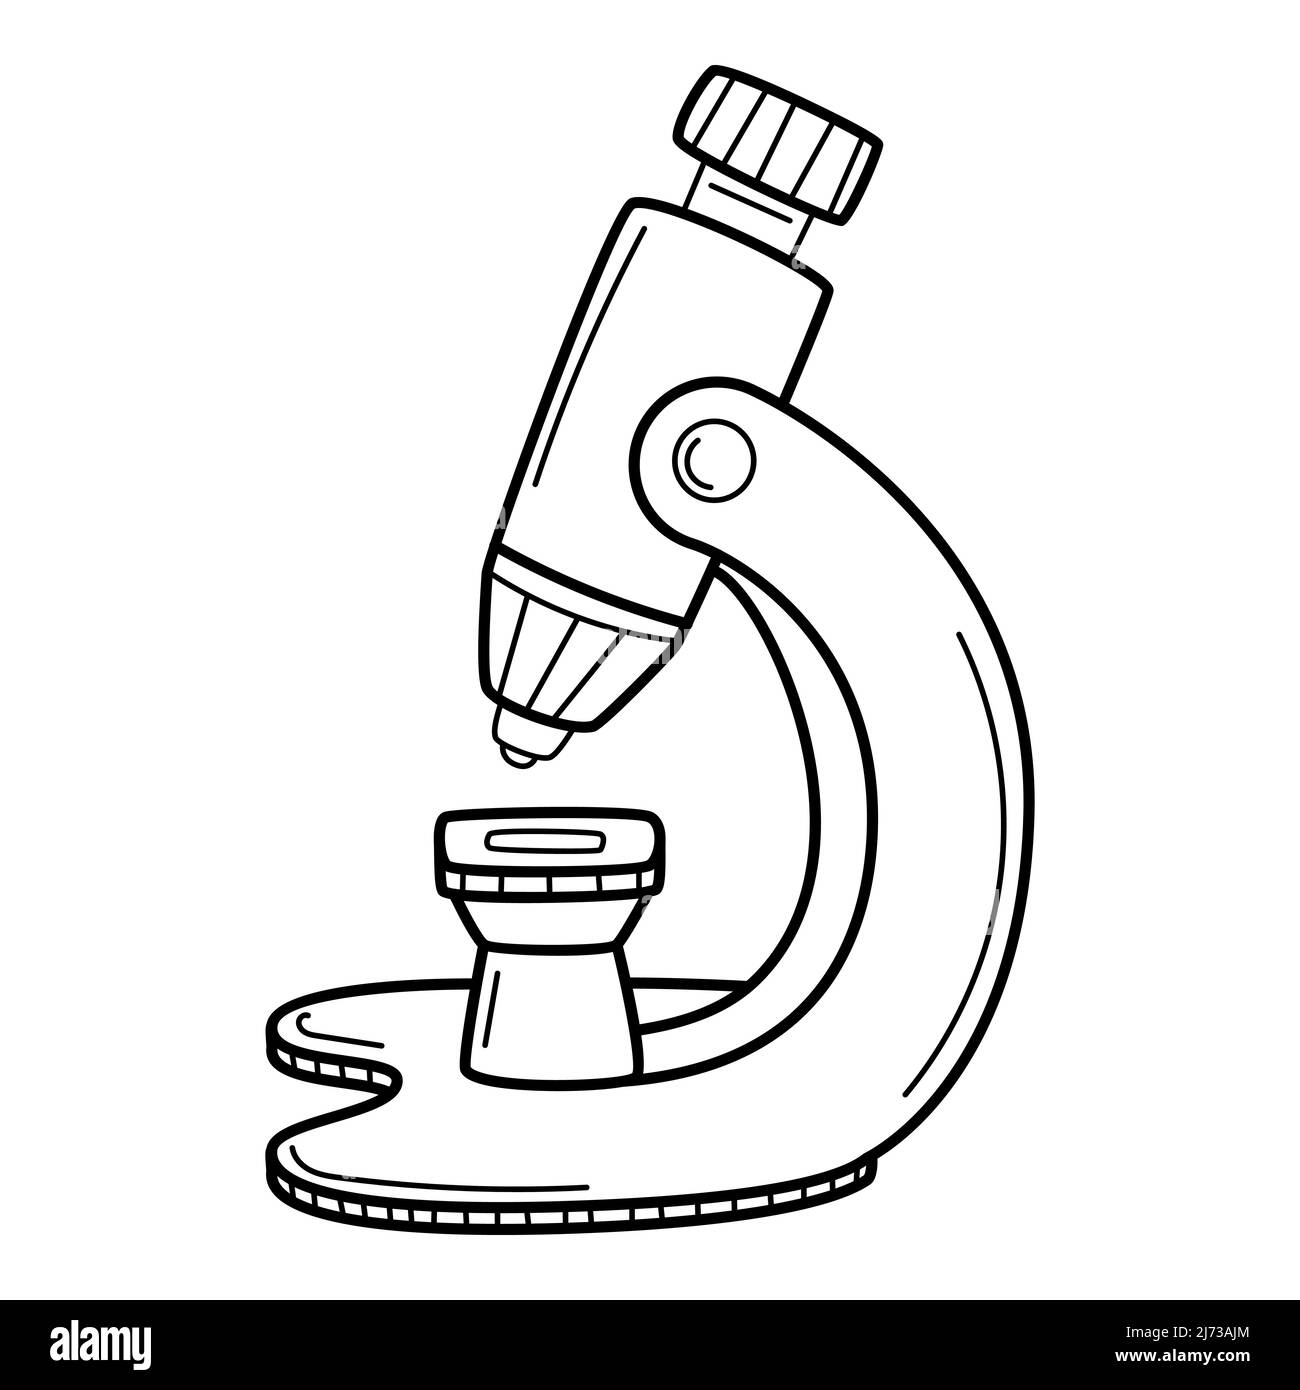 Un microscopio. Stile Doodle. Un dispositivo ottico. Un simbolo di scienza, biologia, studio, ricerca. Illustrazione vettoriale in bianco e nero disegnata a mano. I desi Illustrazione Vettoriale